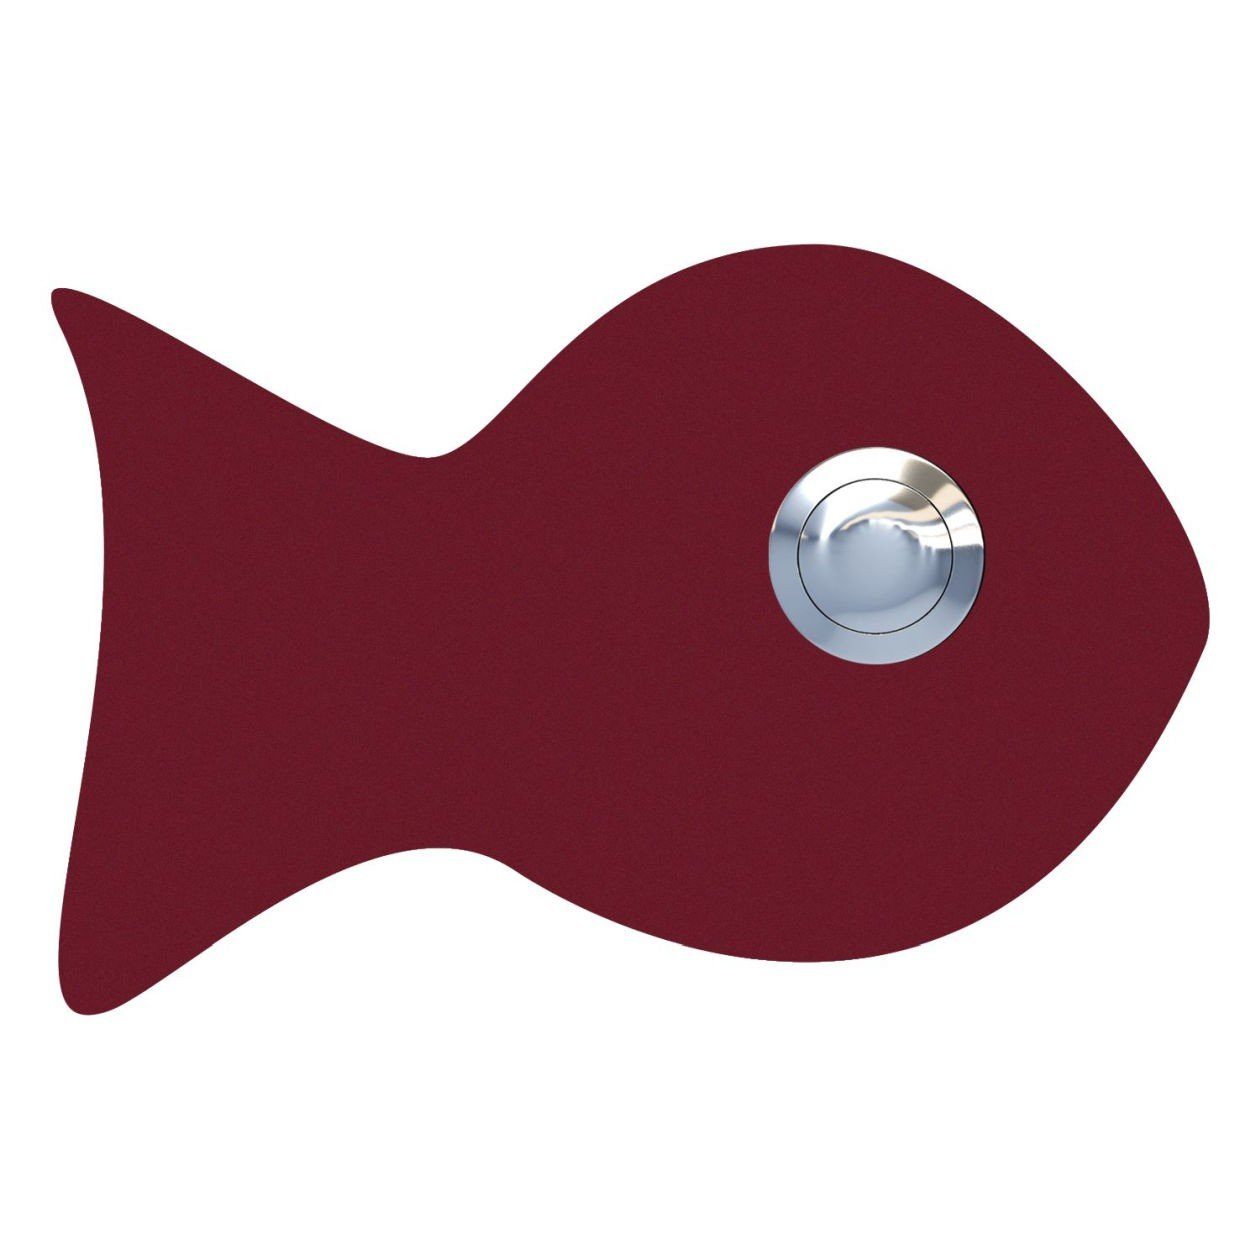 Bravios Briefkasten Klingeltaster Fisch Rot